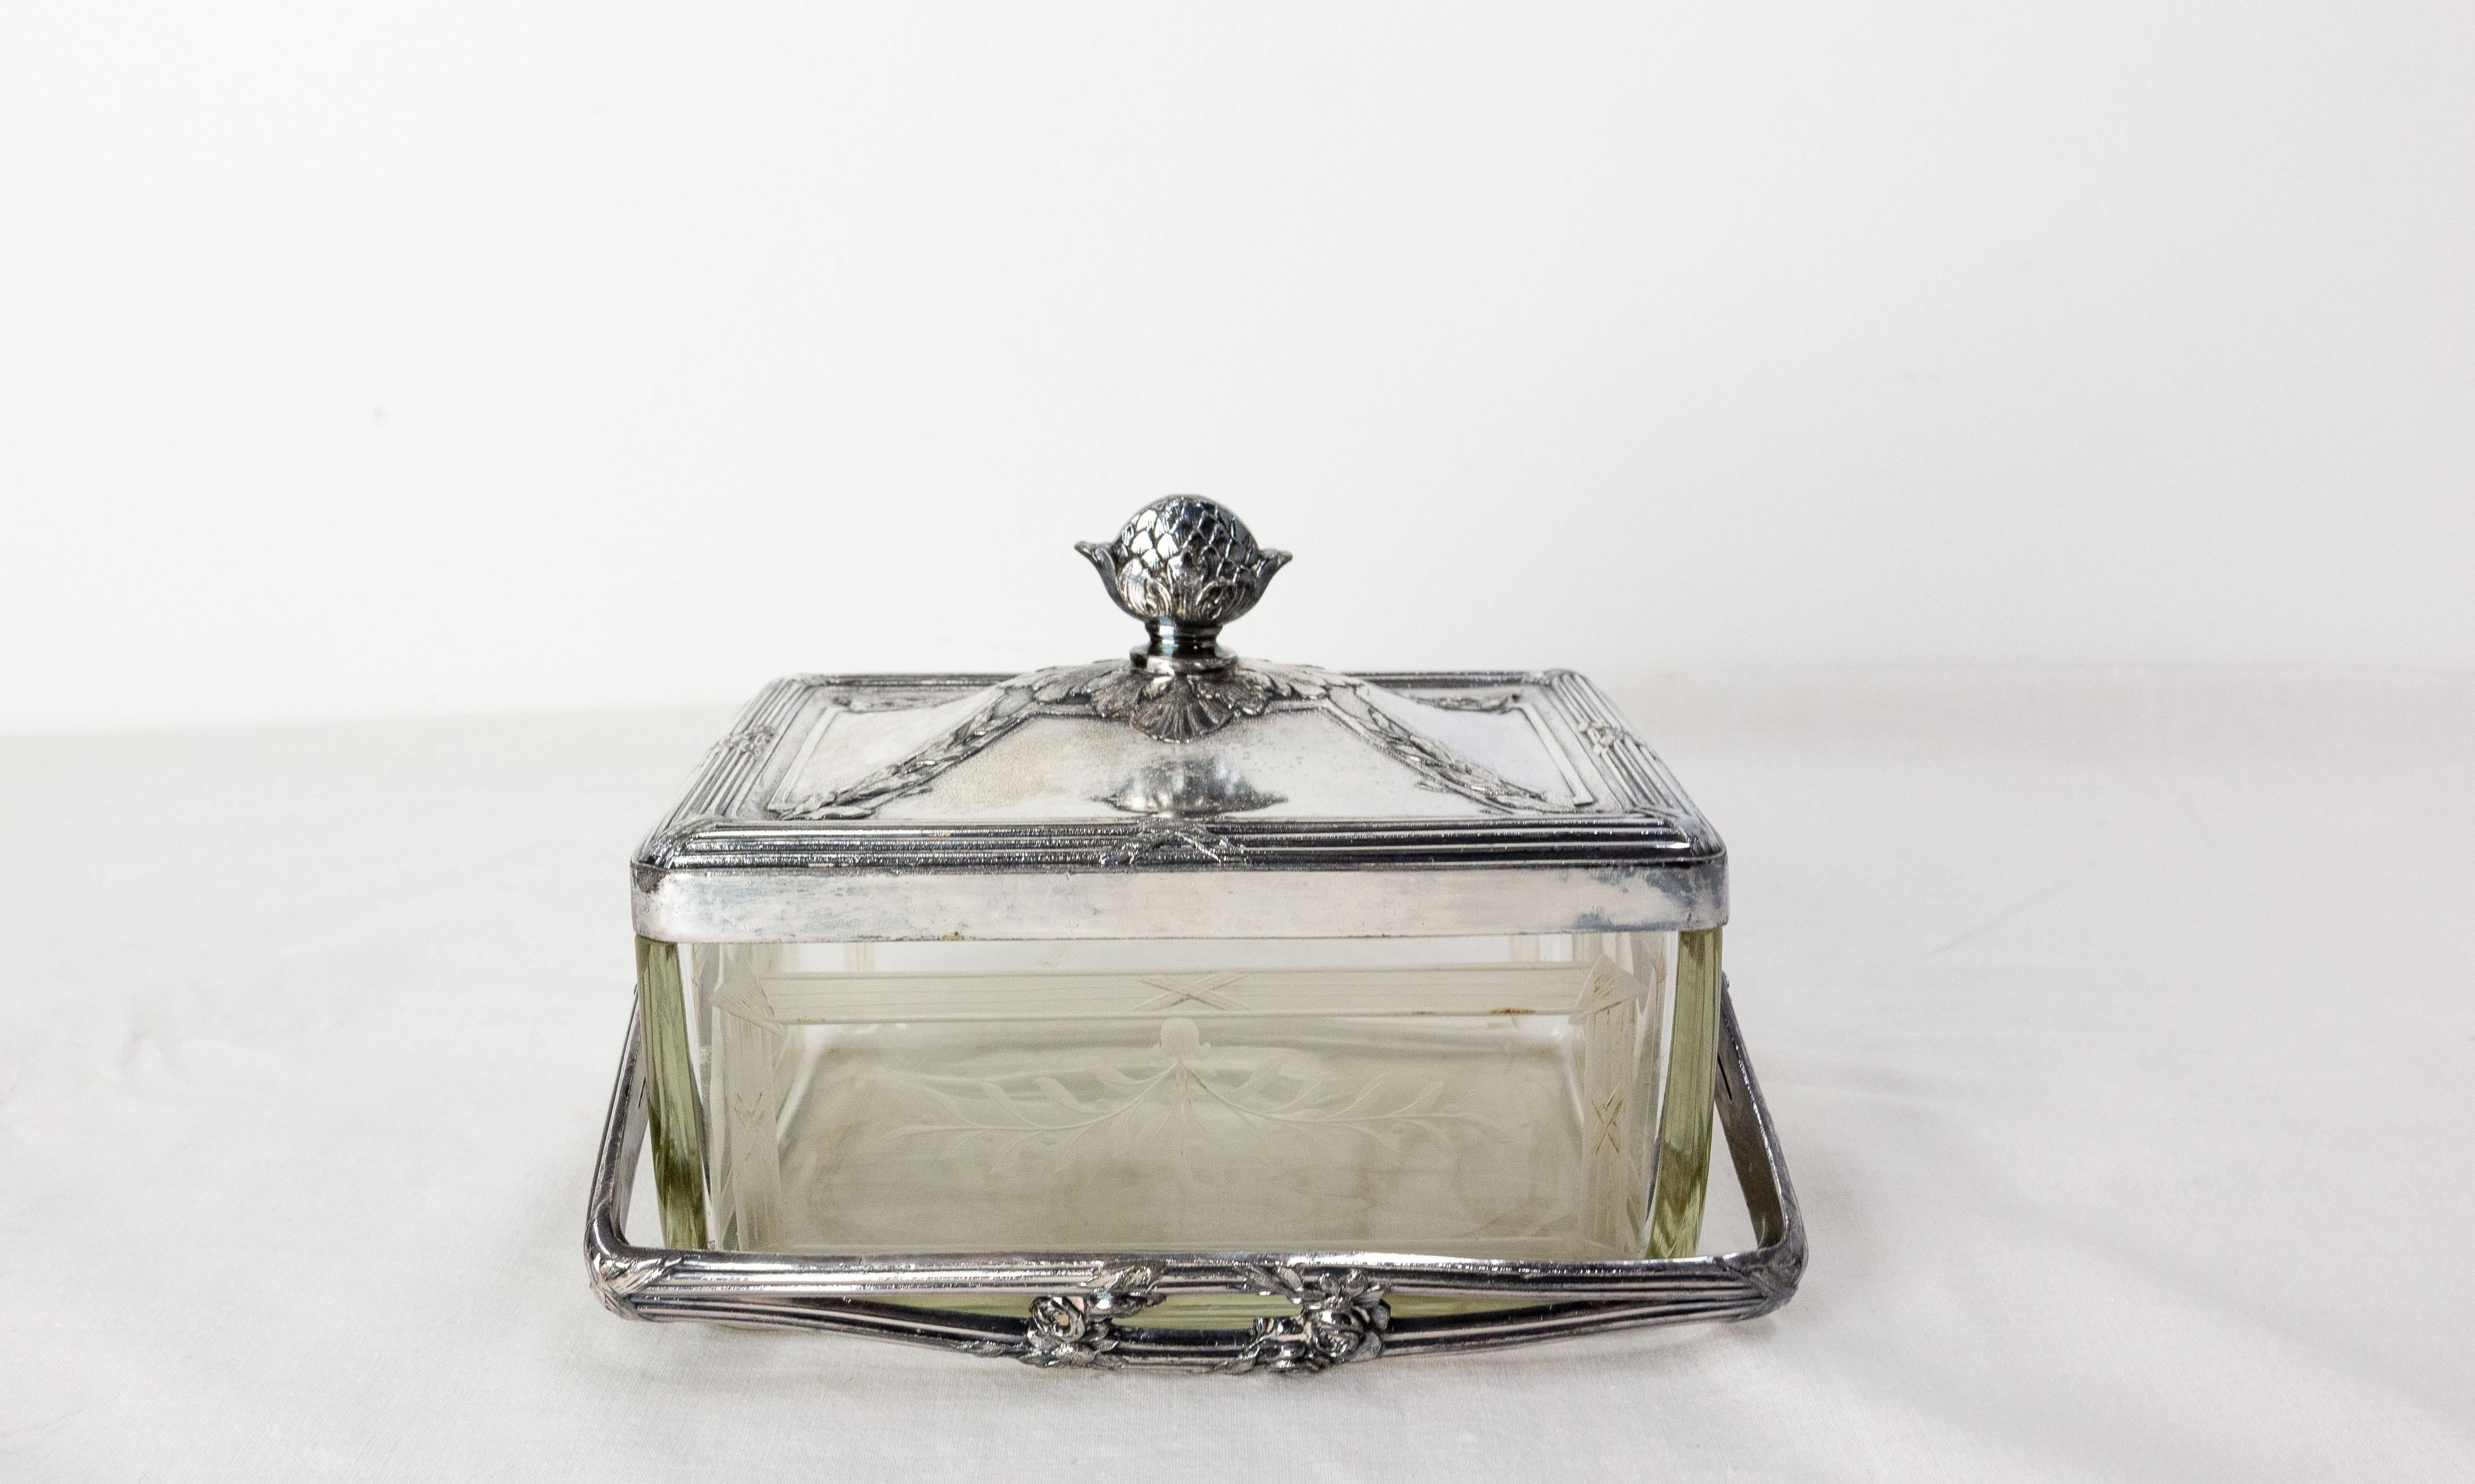 Petite boîte en verre gravé encadrée d'éther nickelé avec son couvercle assorti et une poignée.
La décoration de la boîte avec ses éléments végétaux, ses roses et sa pomme de pin sont typiques de la période Napoléon III.
Peut être utilisé comme un